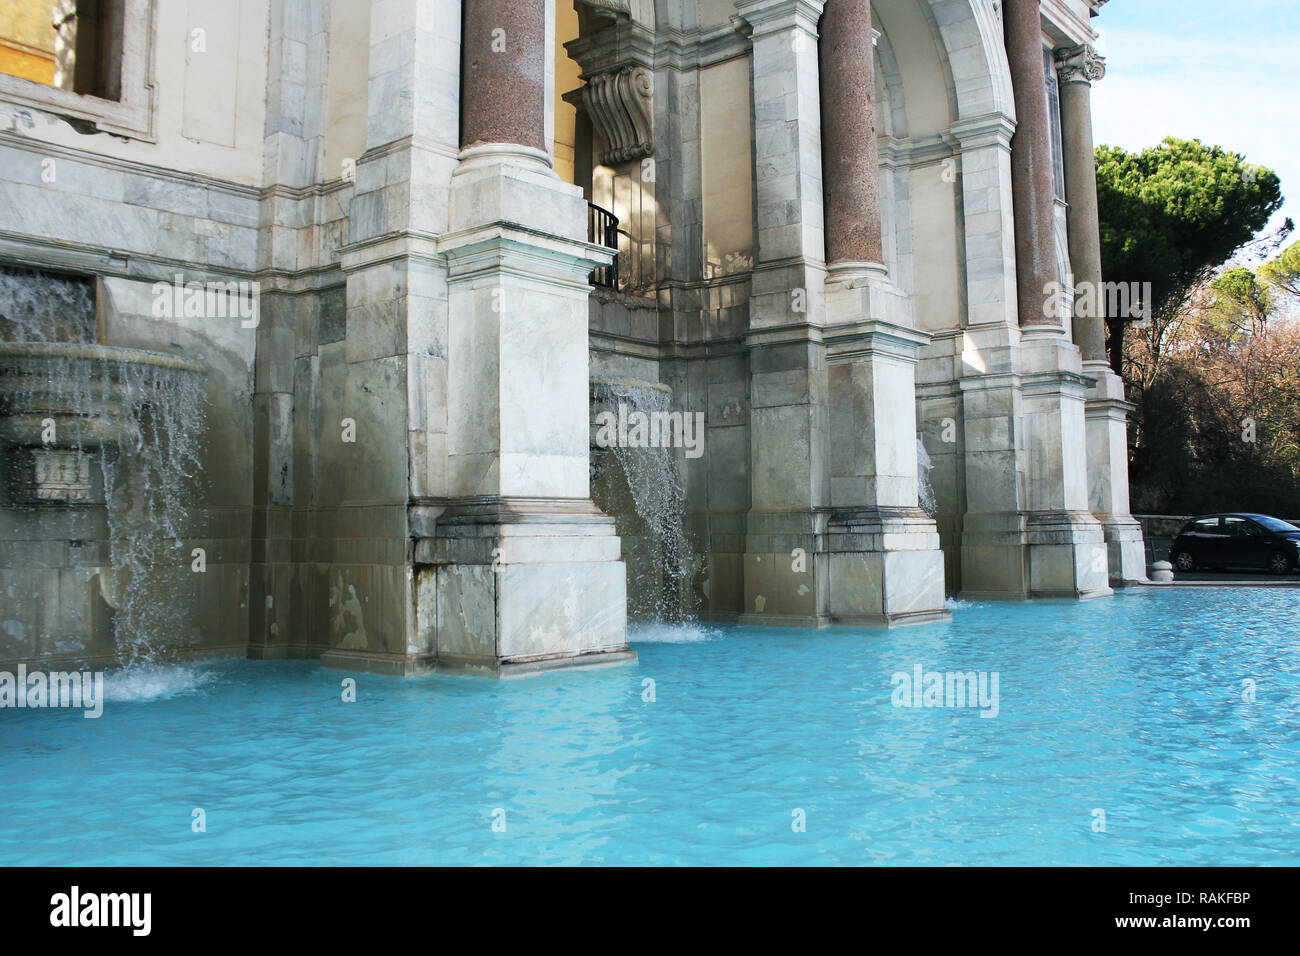 La Fontana dell'Acqua Paola noto anche come il fontanone ("la grande fontana') è una fontana monumentale situato sul colle del Gianicolo a Roma. Foto Stock